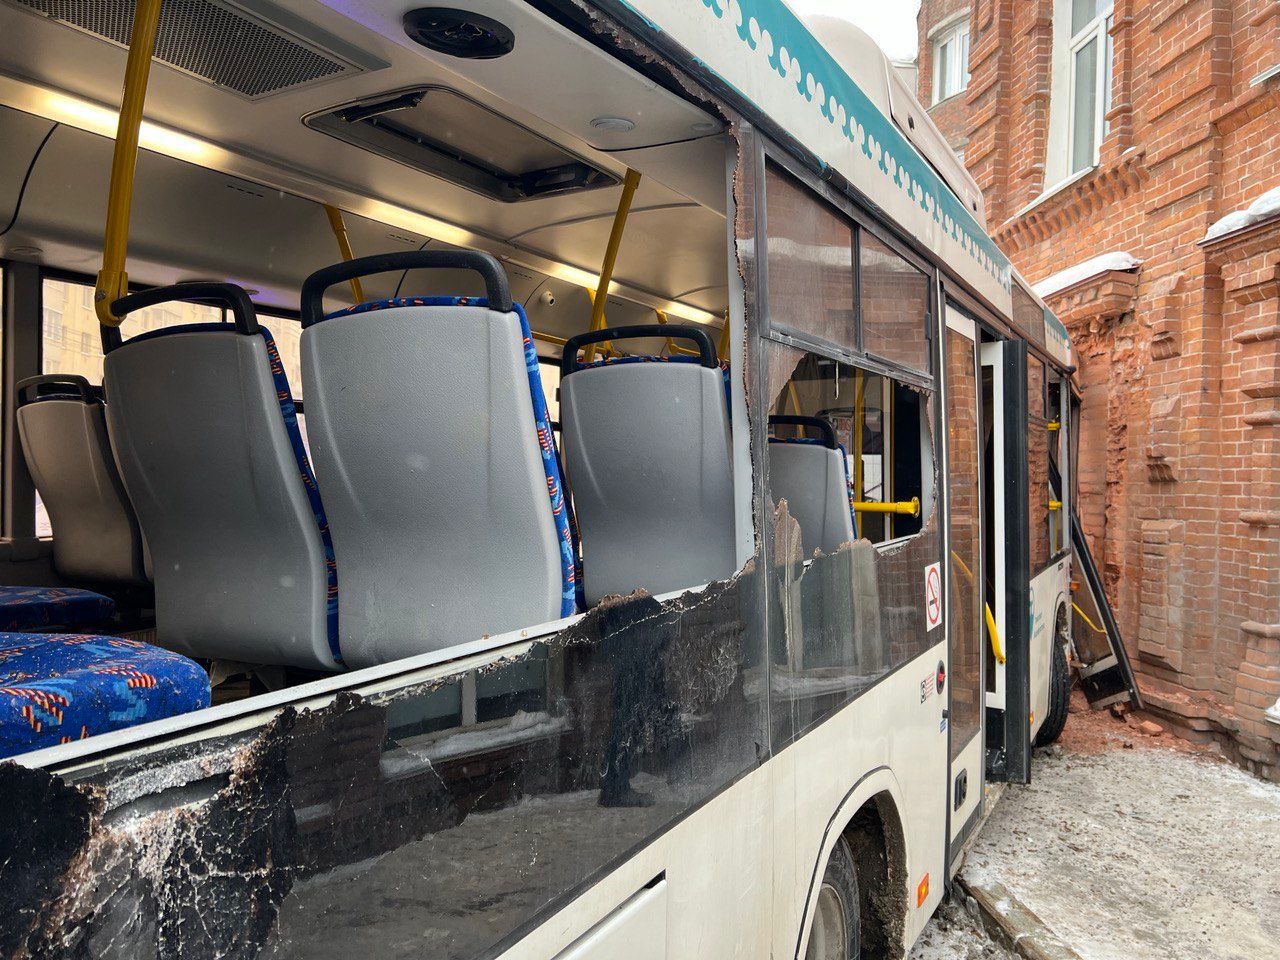 В центре Уфы столкнулись два автобуса. От удара пассажир вывалился из разбитого окна транспорта